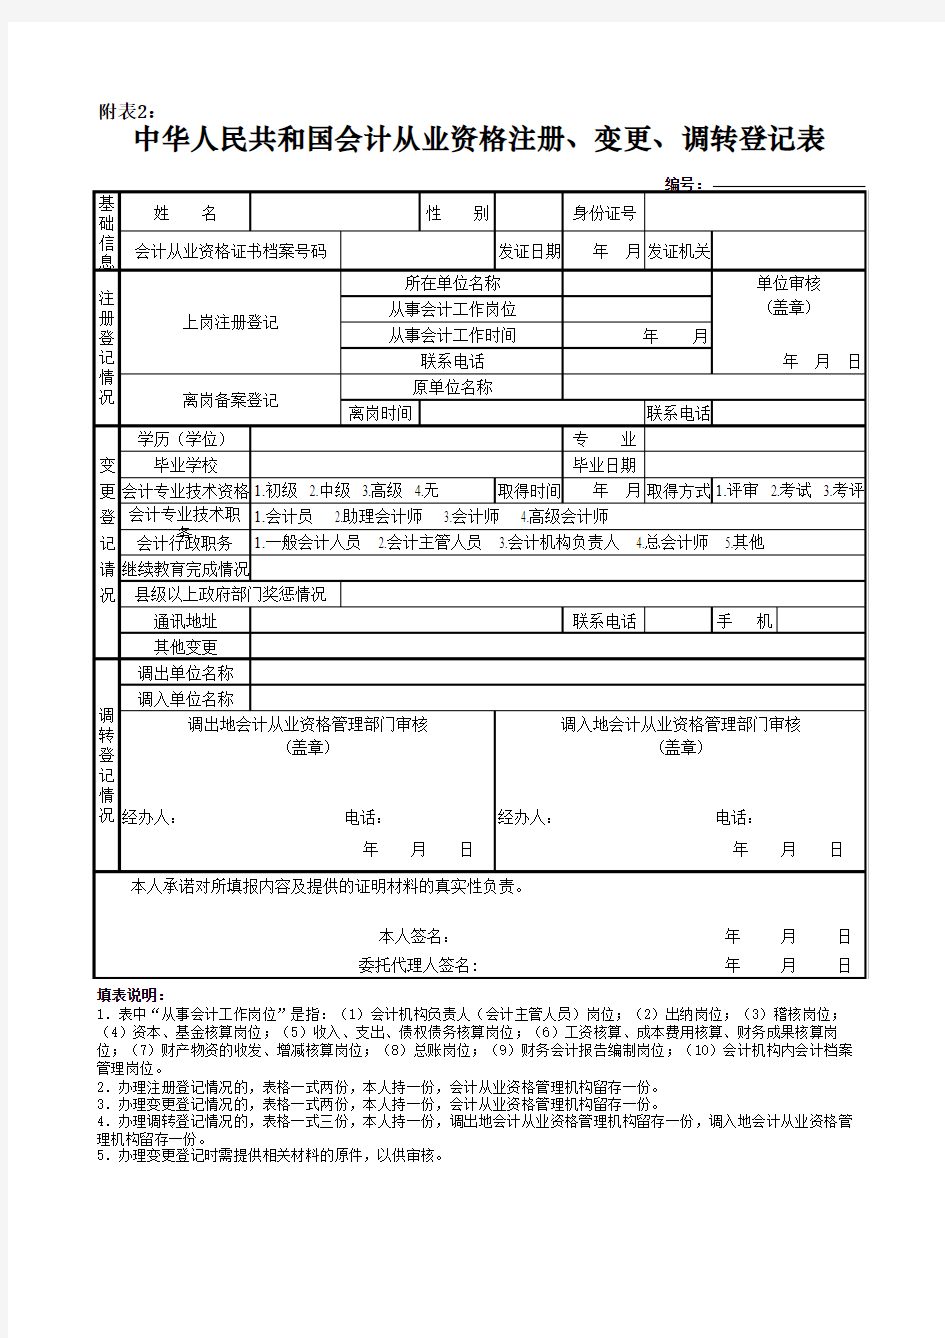 中华人民共和国会计从业资格注册、变更、调转登记表